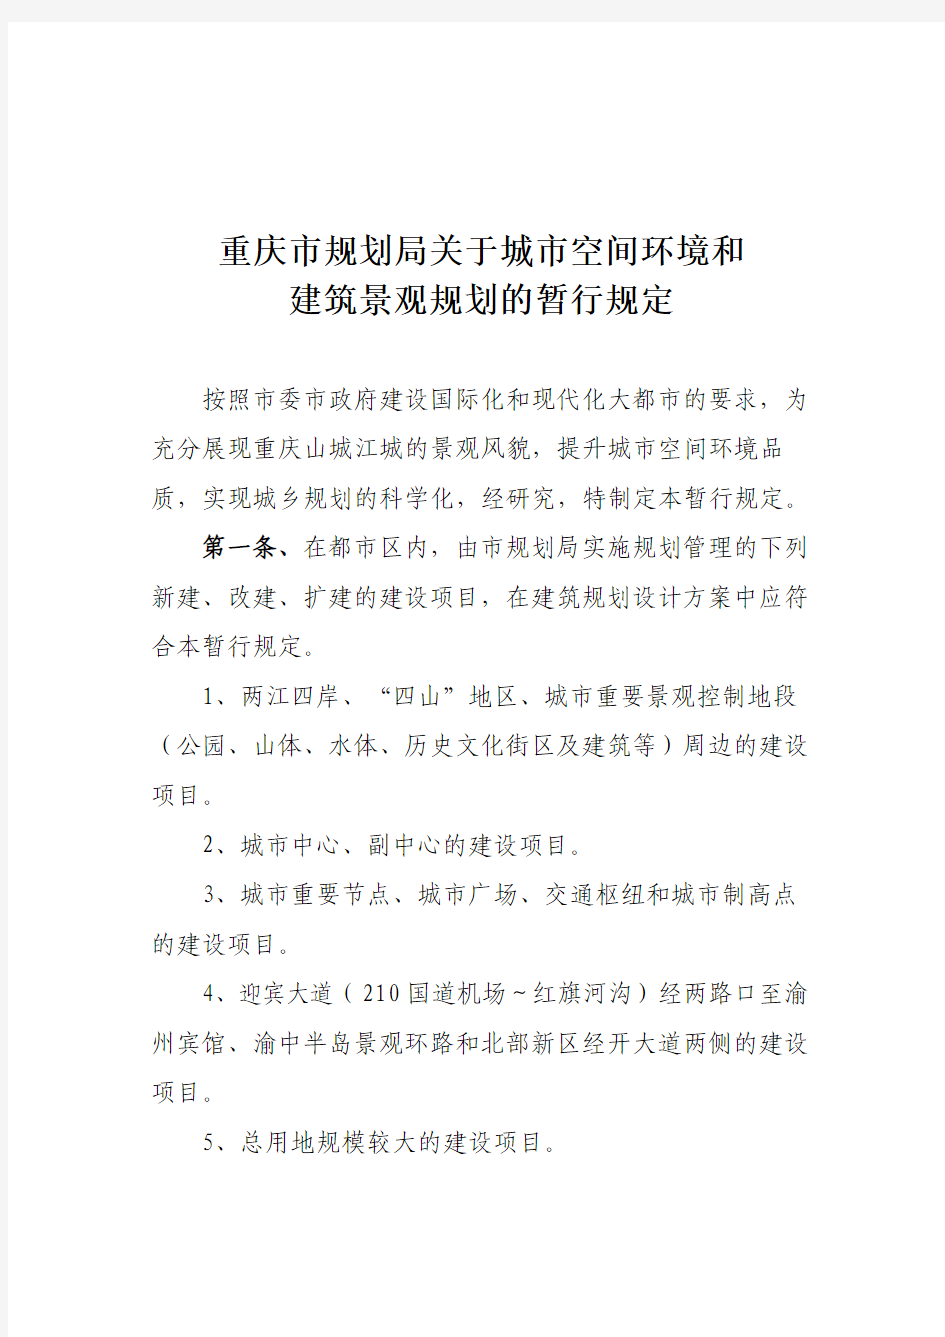 重庆市规划局关于城市空间环境和建筑景观规划的暂行规定